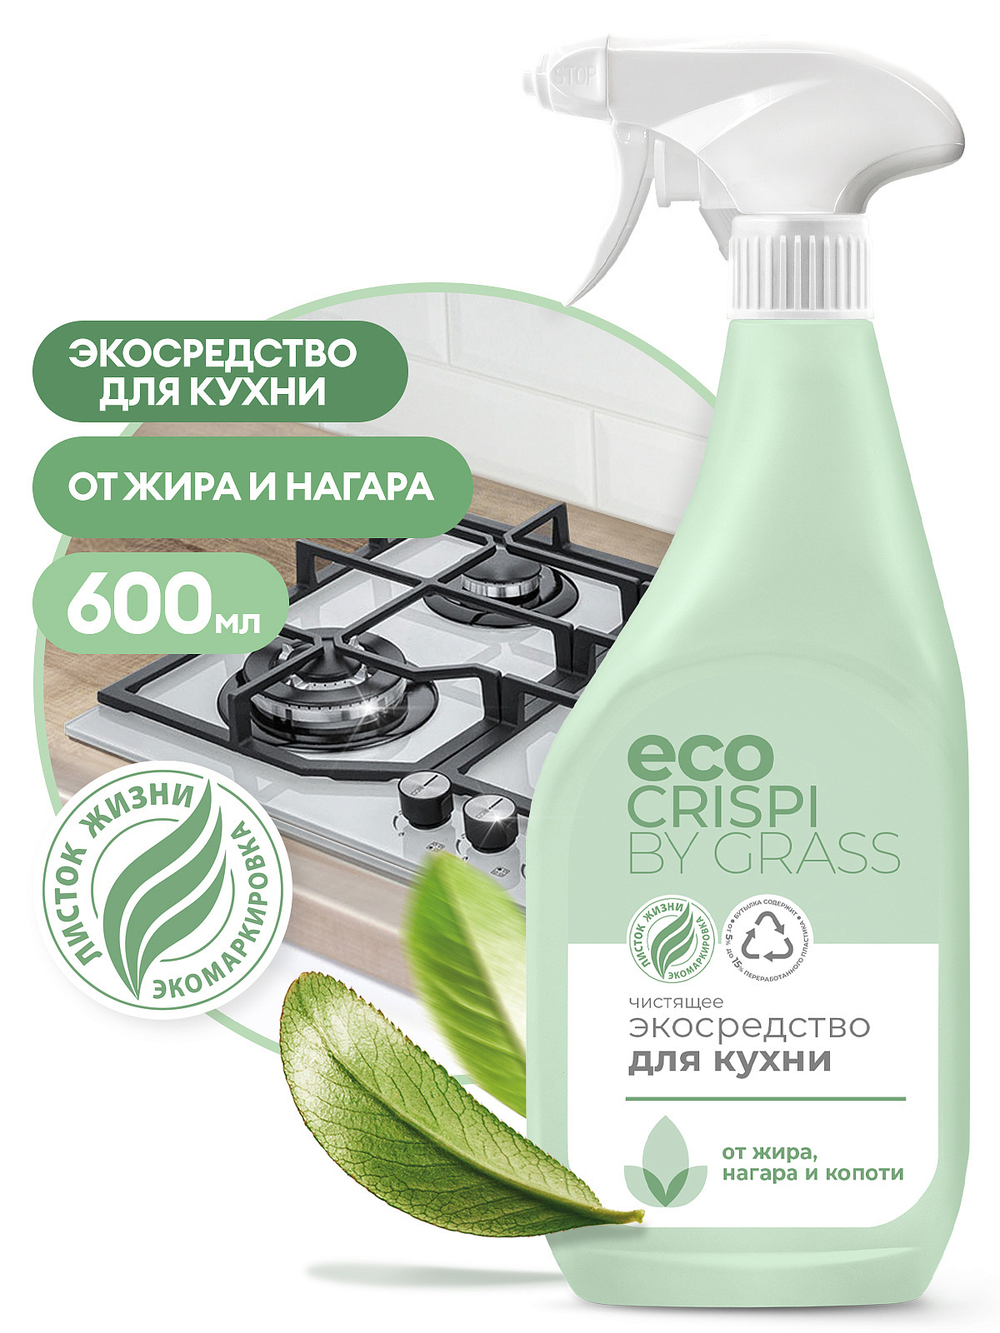 CRISPI чистящее экосредство для кухни 600 мл